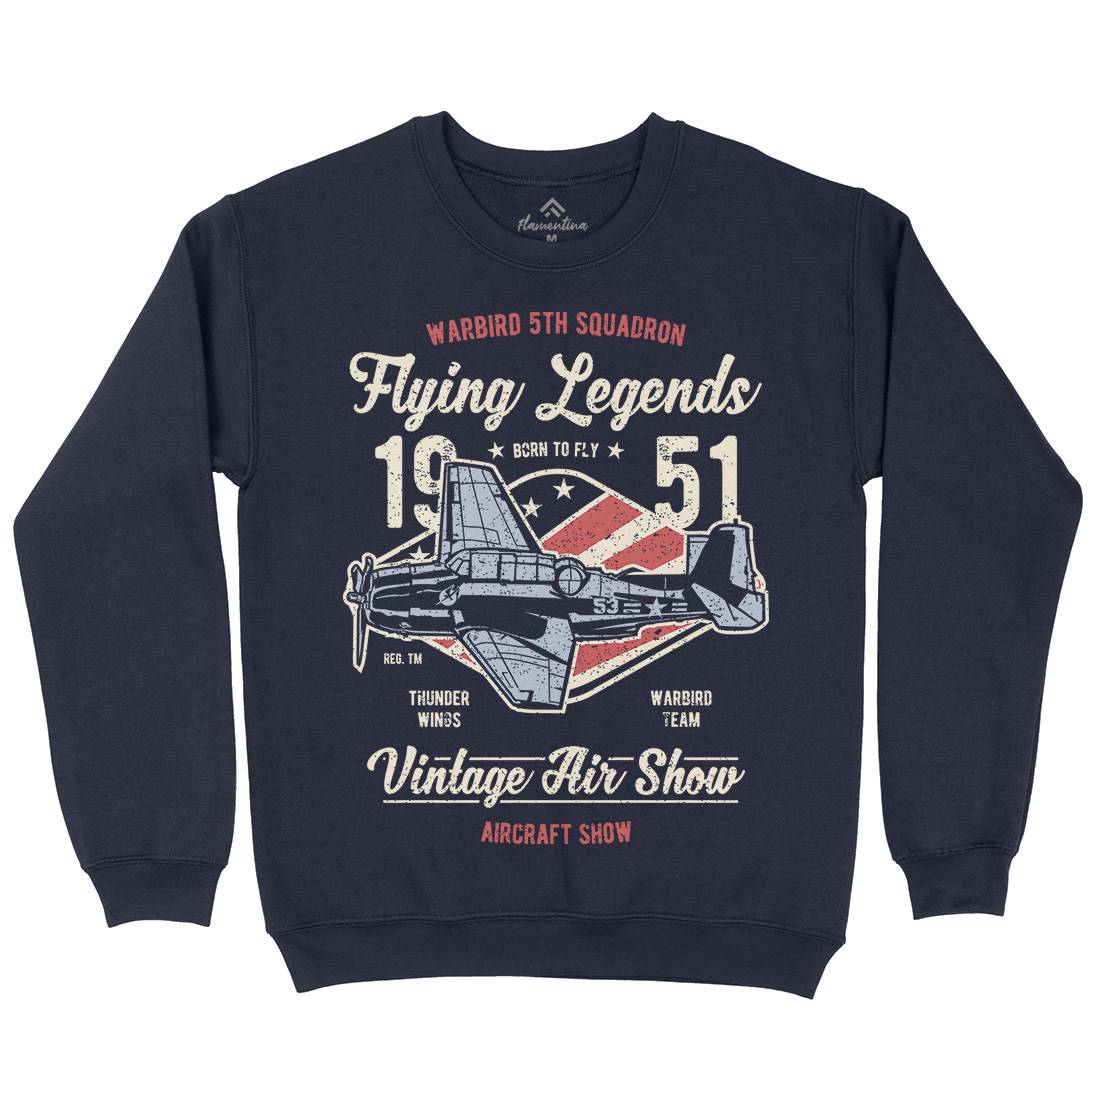 Flying Legends Mens Crew Neck Sweatshirt Vehicles A664